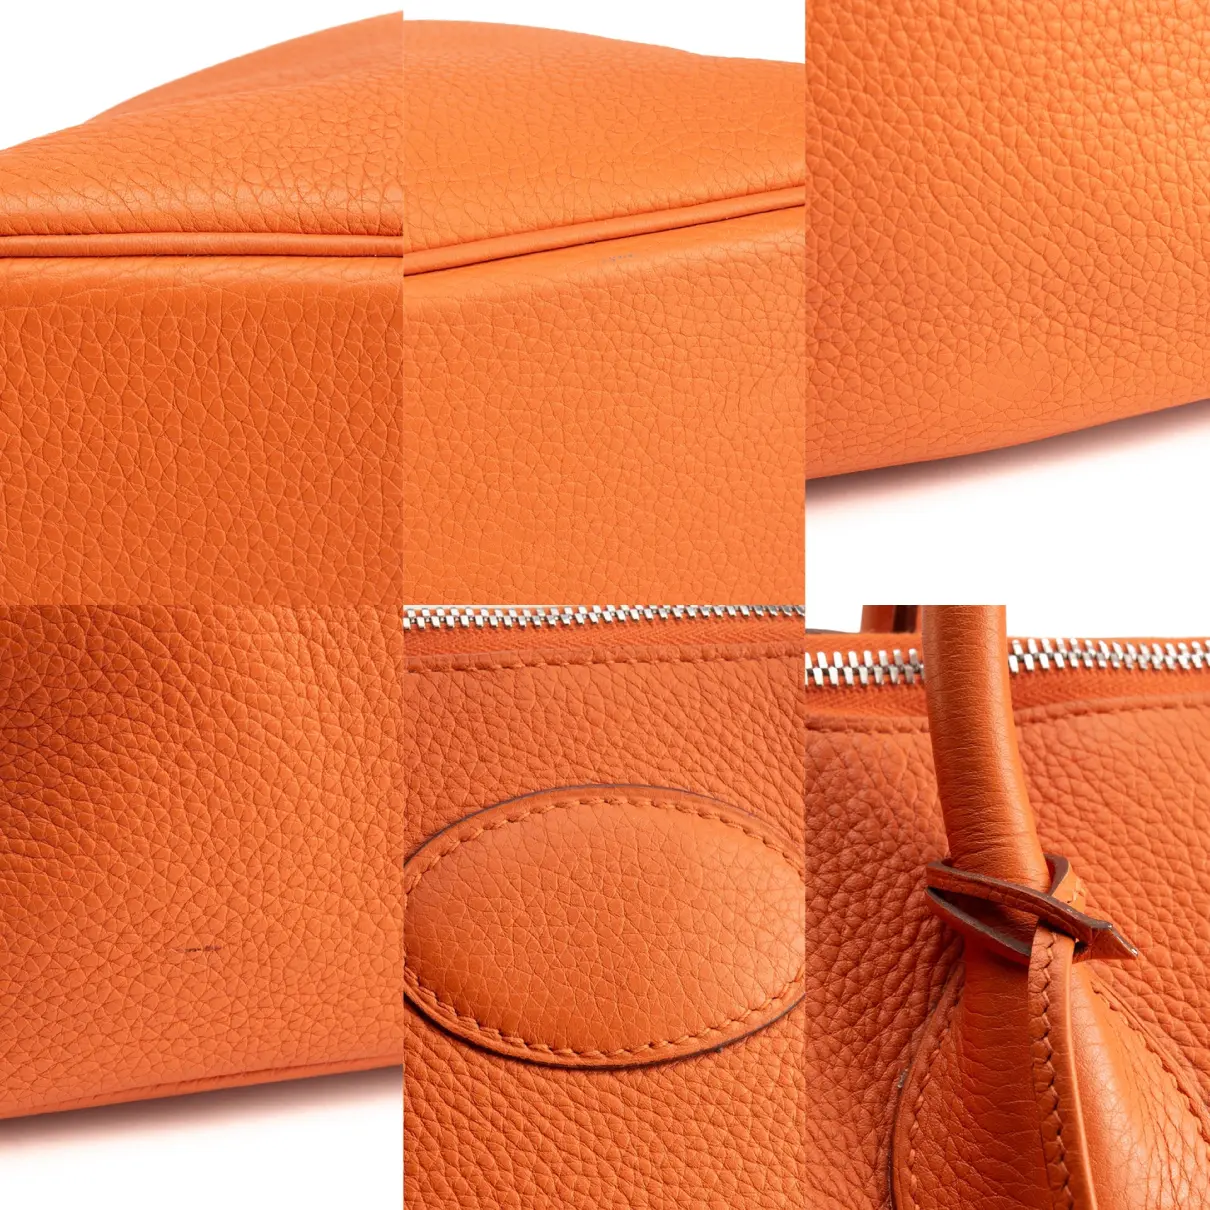 Bolide leather bag Hermès - Vintage